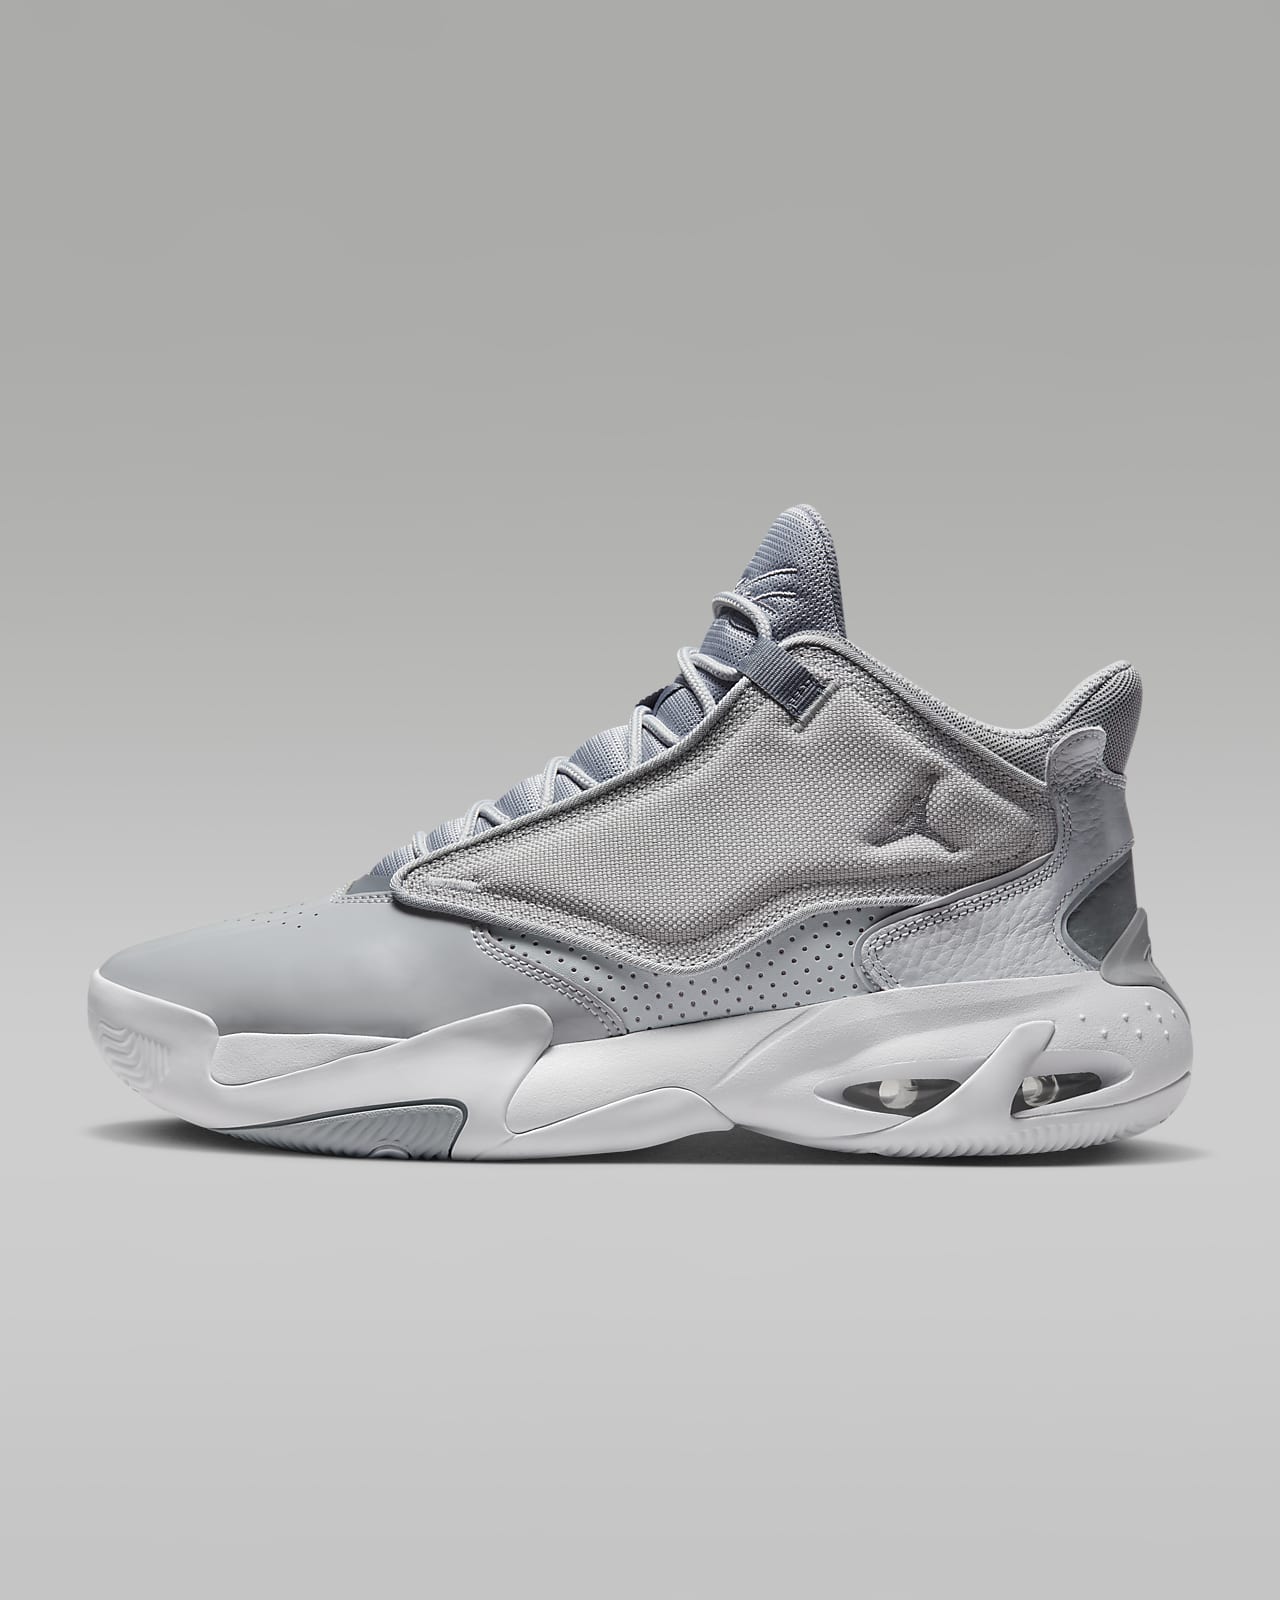 Jordan 4 Men's Shoes. Nike LU